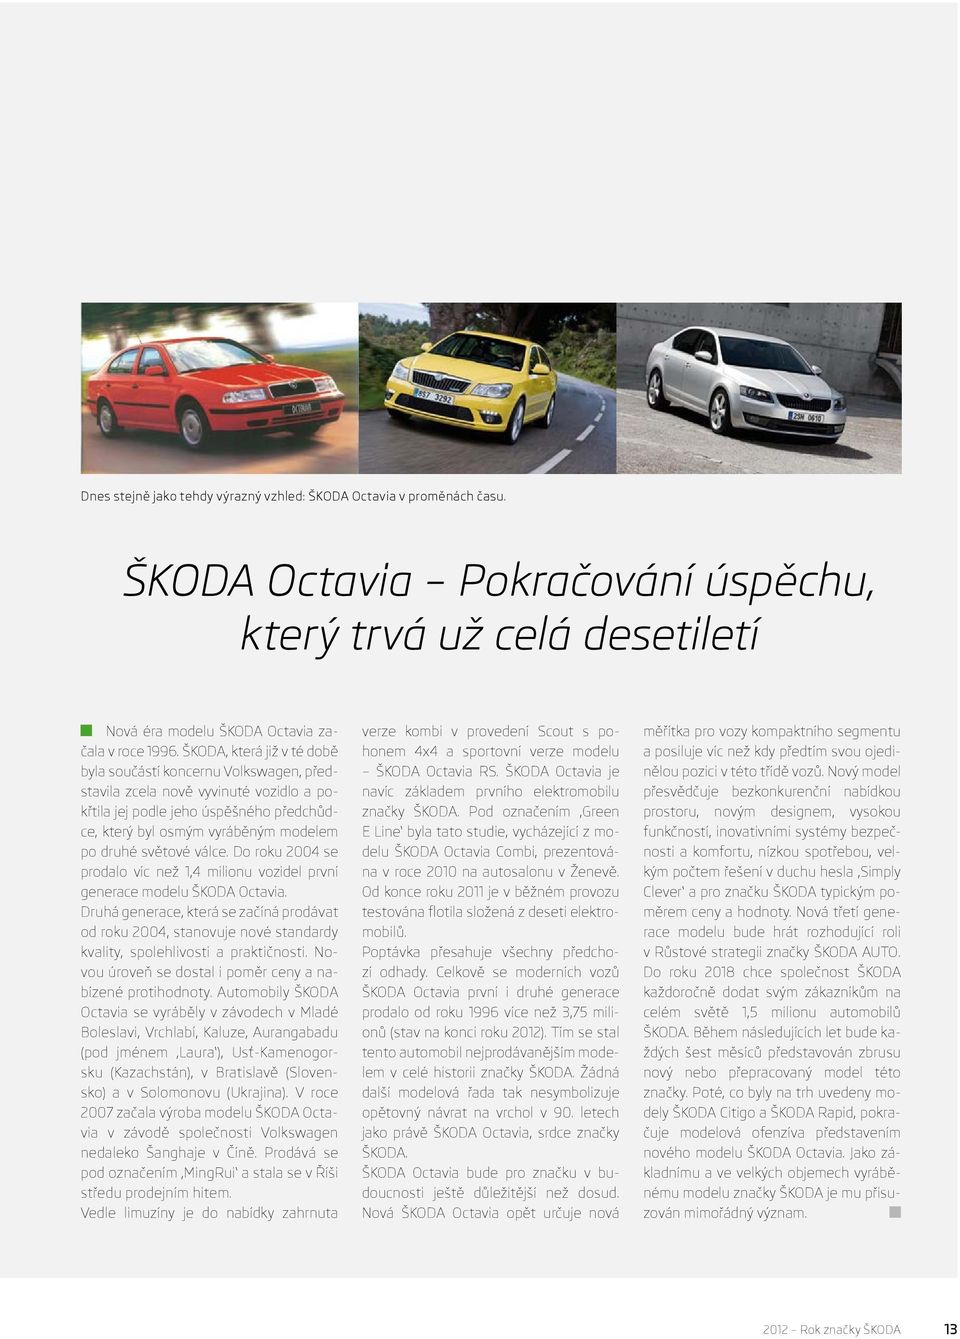 světové válce. Do roku 2004 se prodalo víc než 1,4 milionu vozidel první generace modelu ŠKODA Octavia.